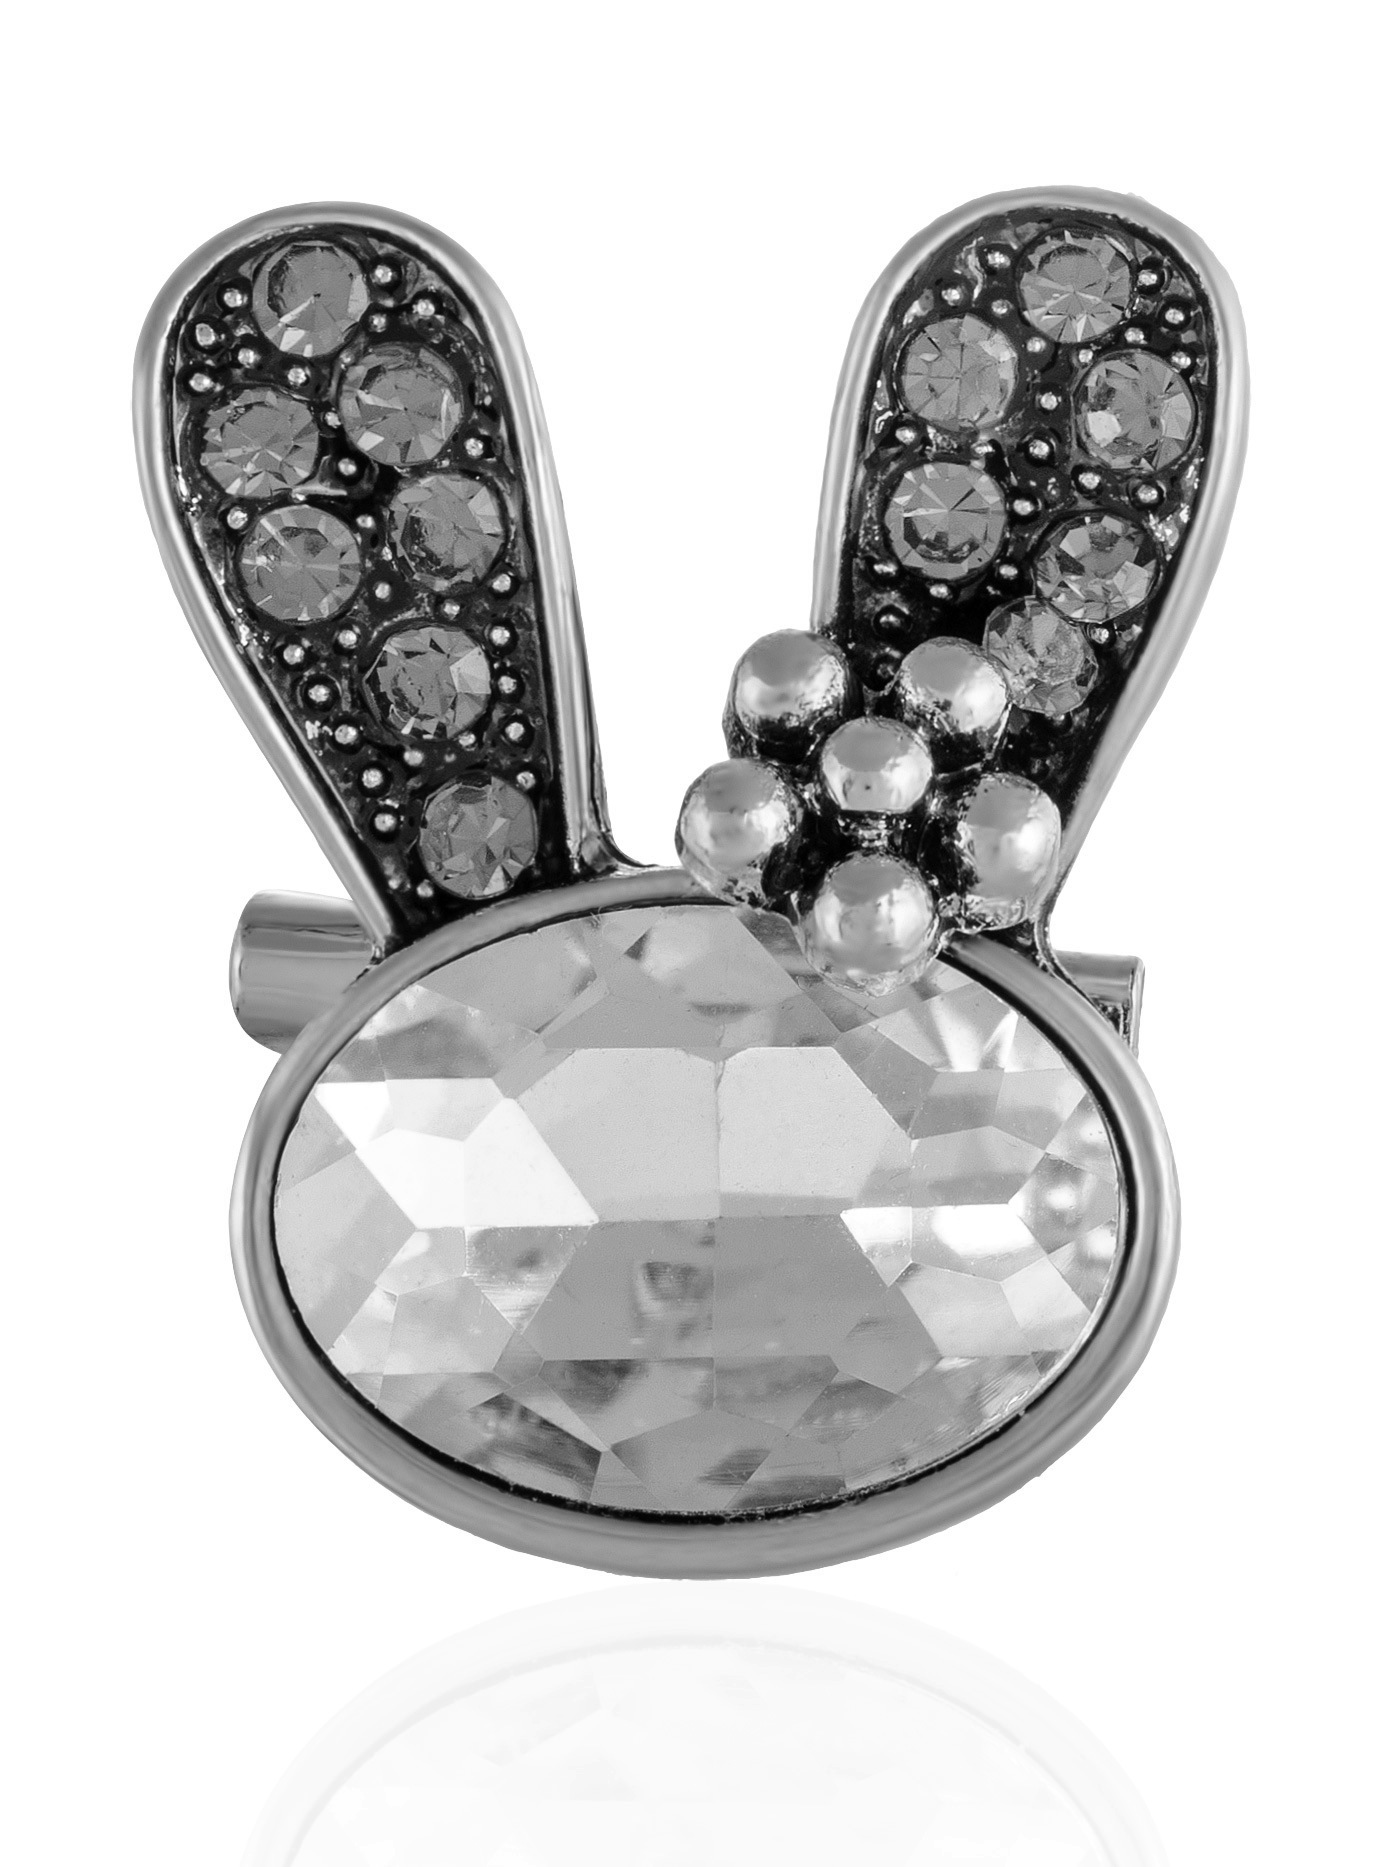 Дизайнерская брошь Кролик (заяц) с кристаллами, символ Нового Года 2023